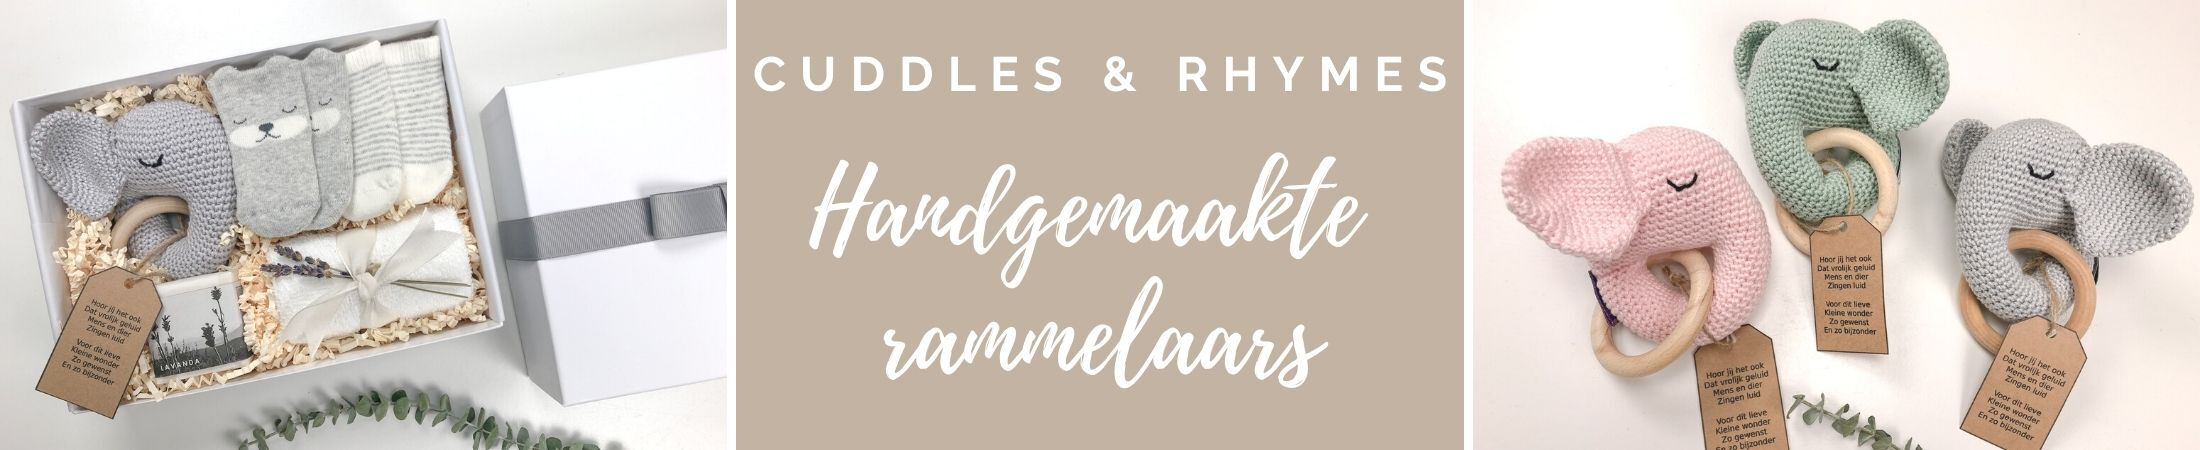 Cuddles & Rhymes